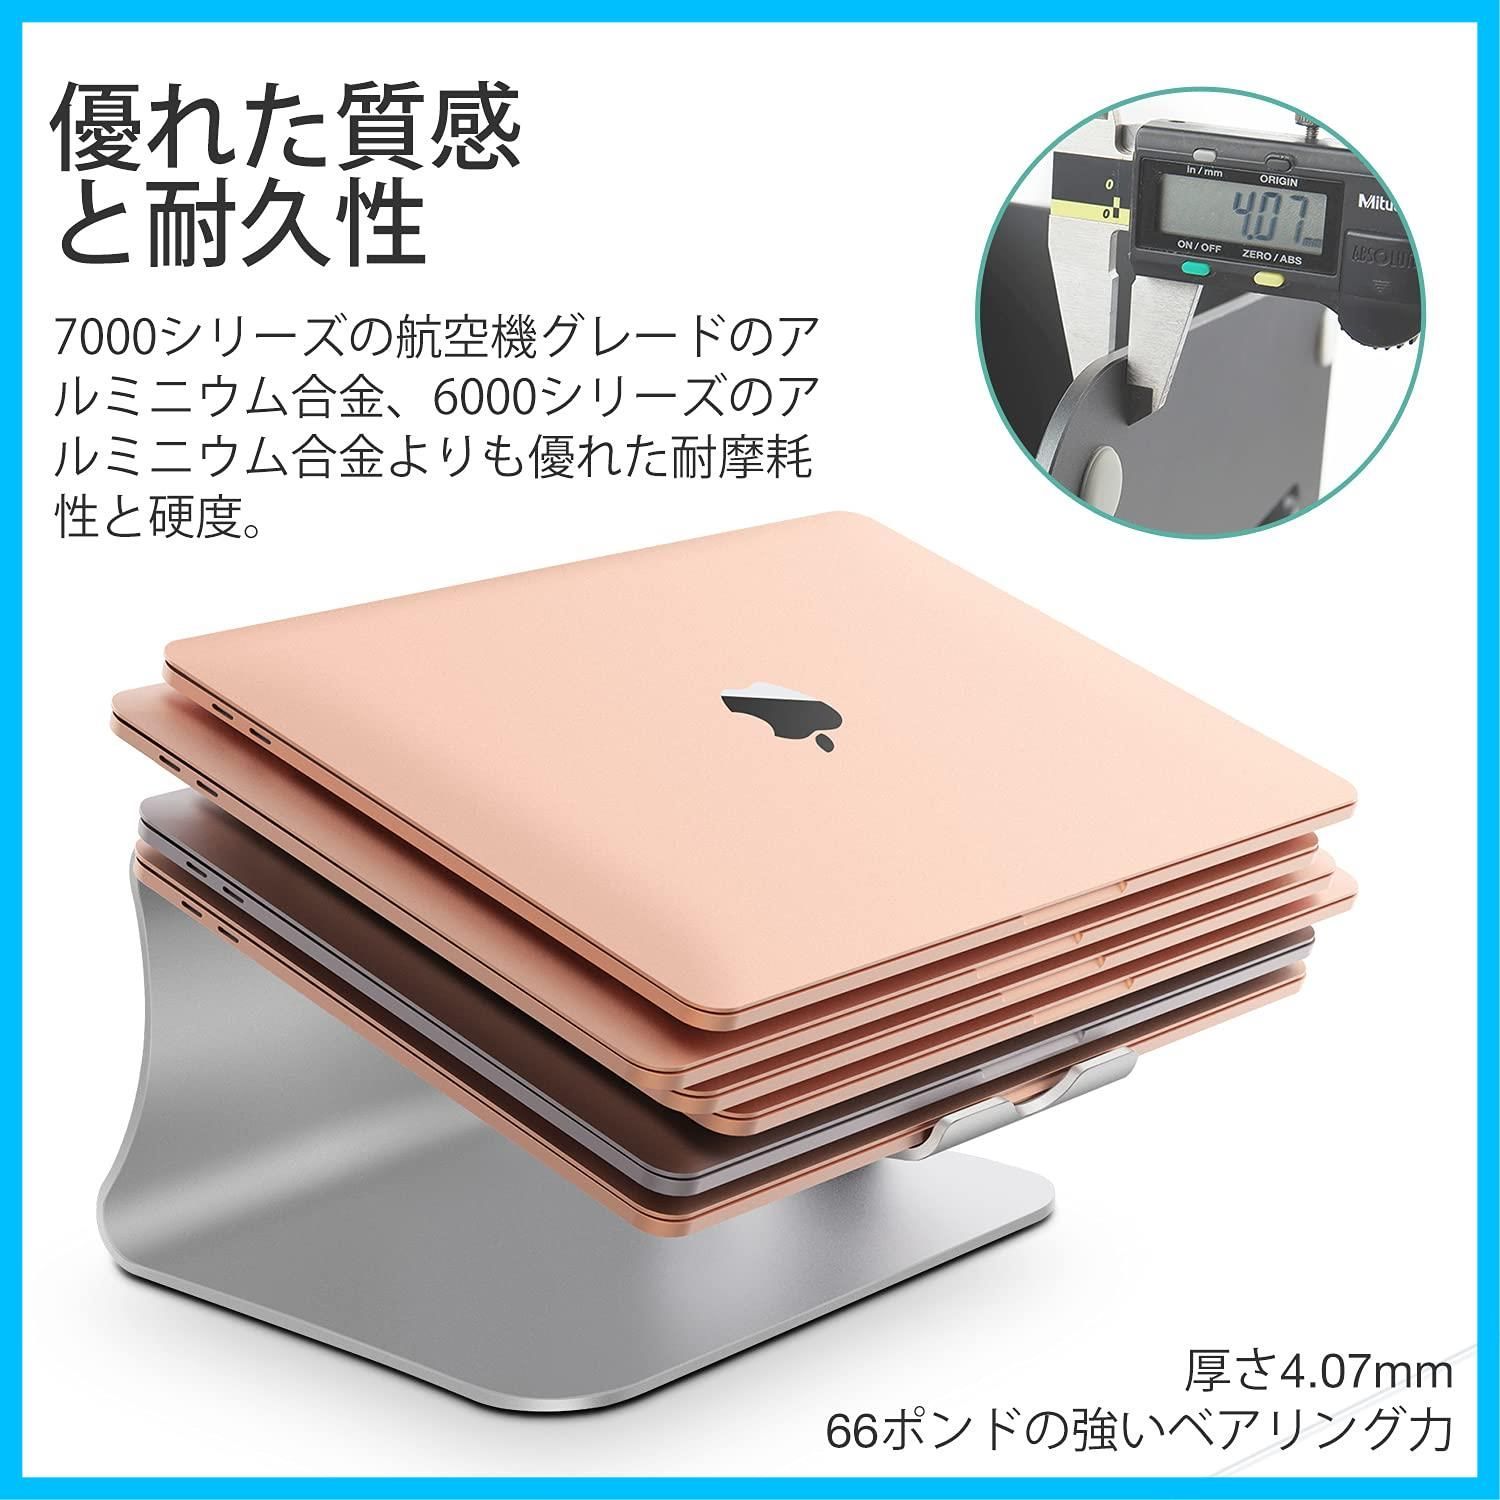 【特価商品】Macbook '' Air '' -16 Pro/富士通と互換性のある放熱性に 11 アルミニウム合金PCスタンド-シルバー Bestandノートパソコンスタンド